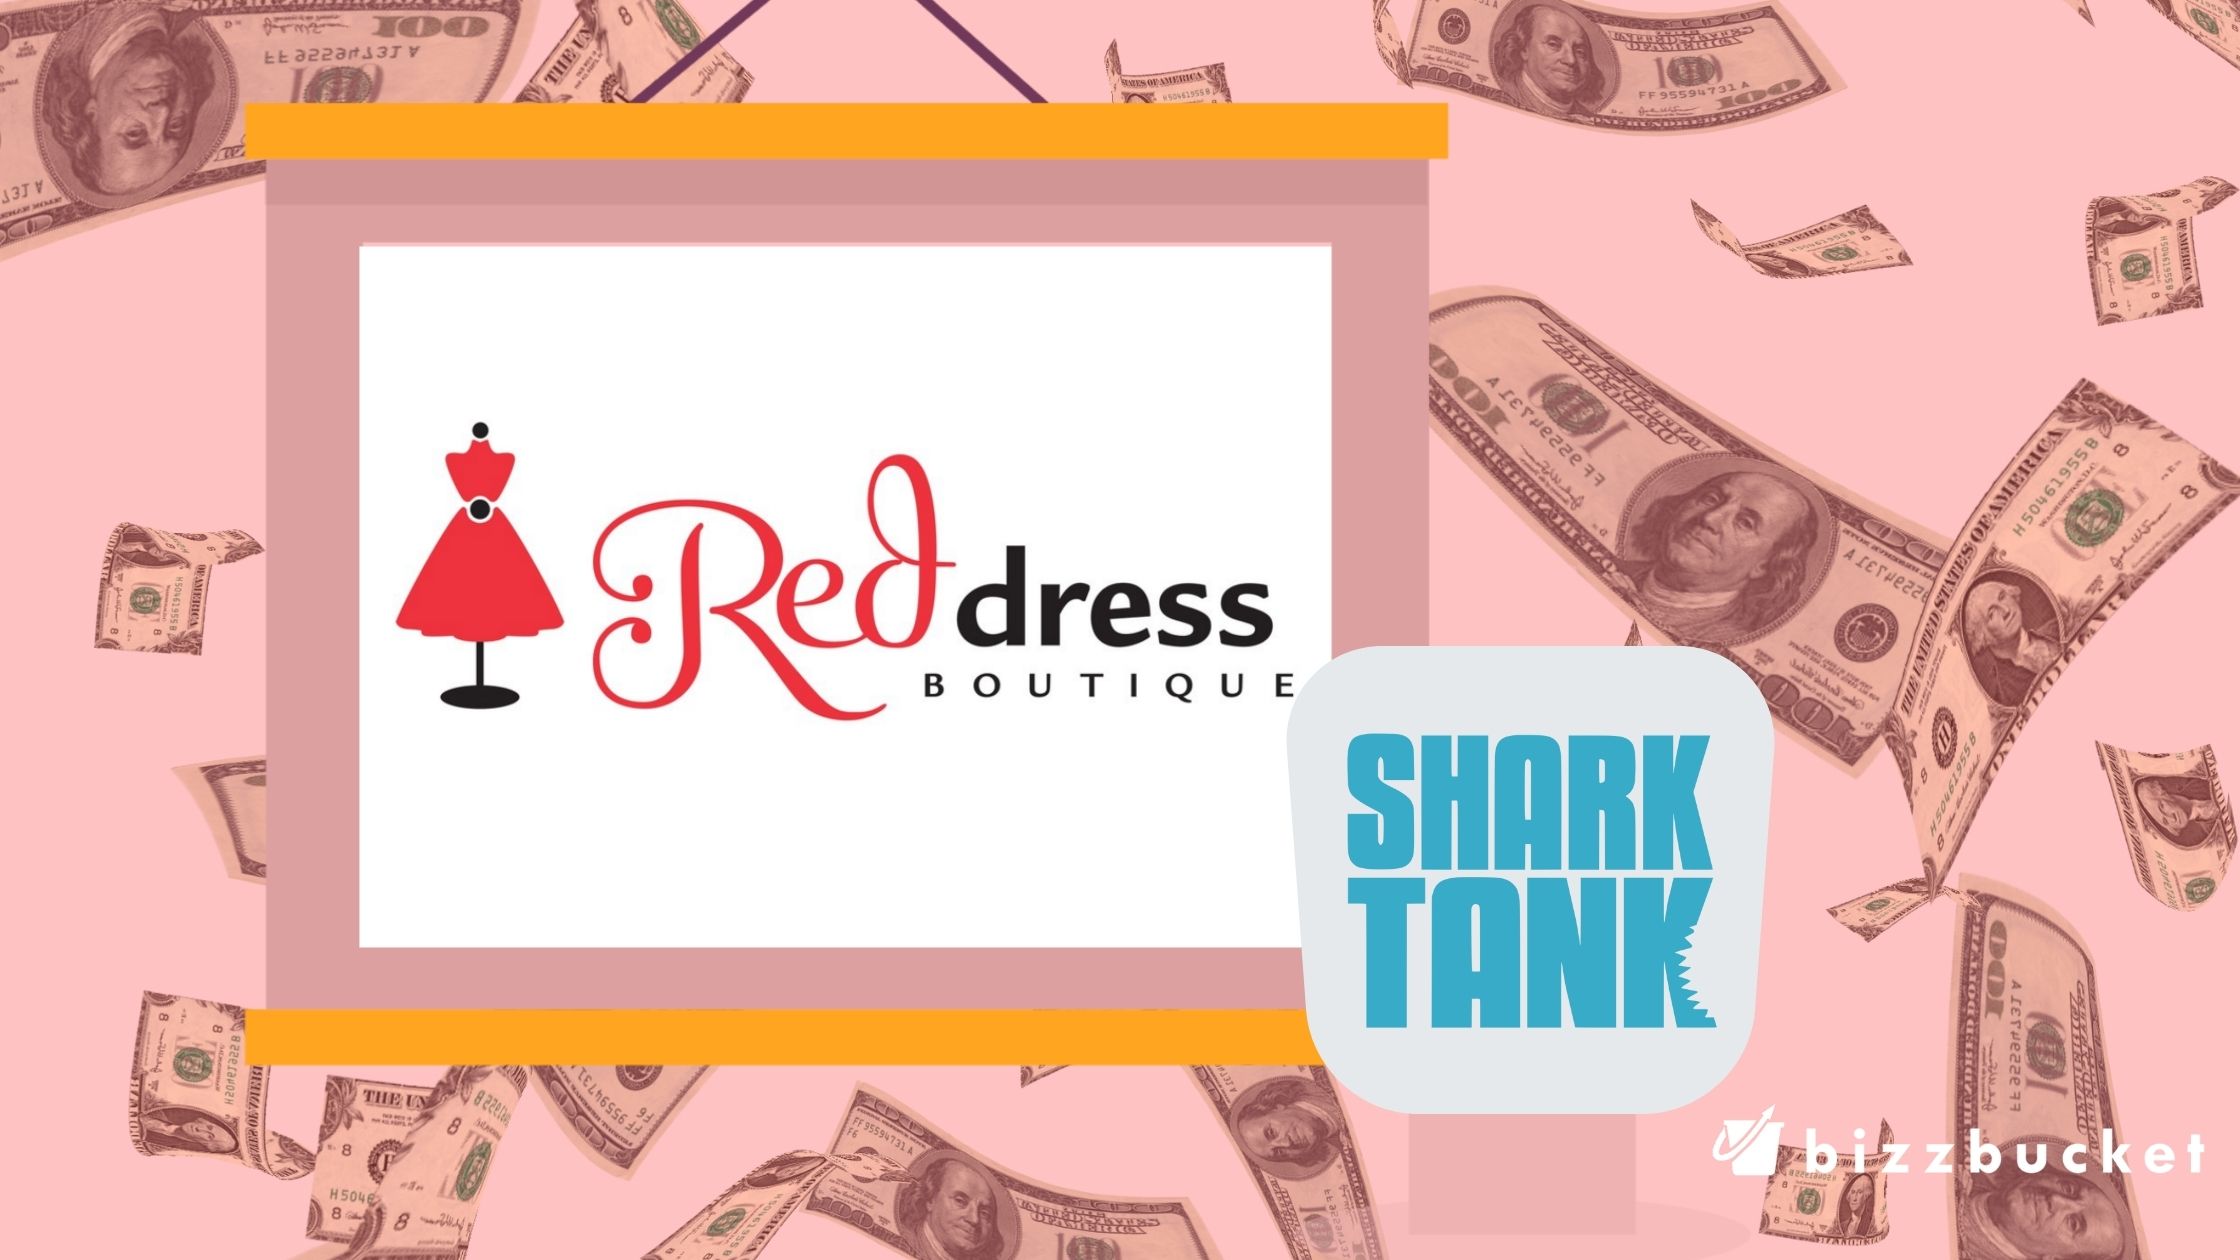 Red dress boutique shark tank update